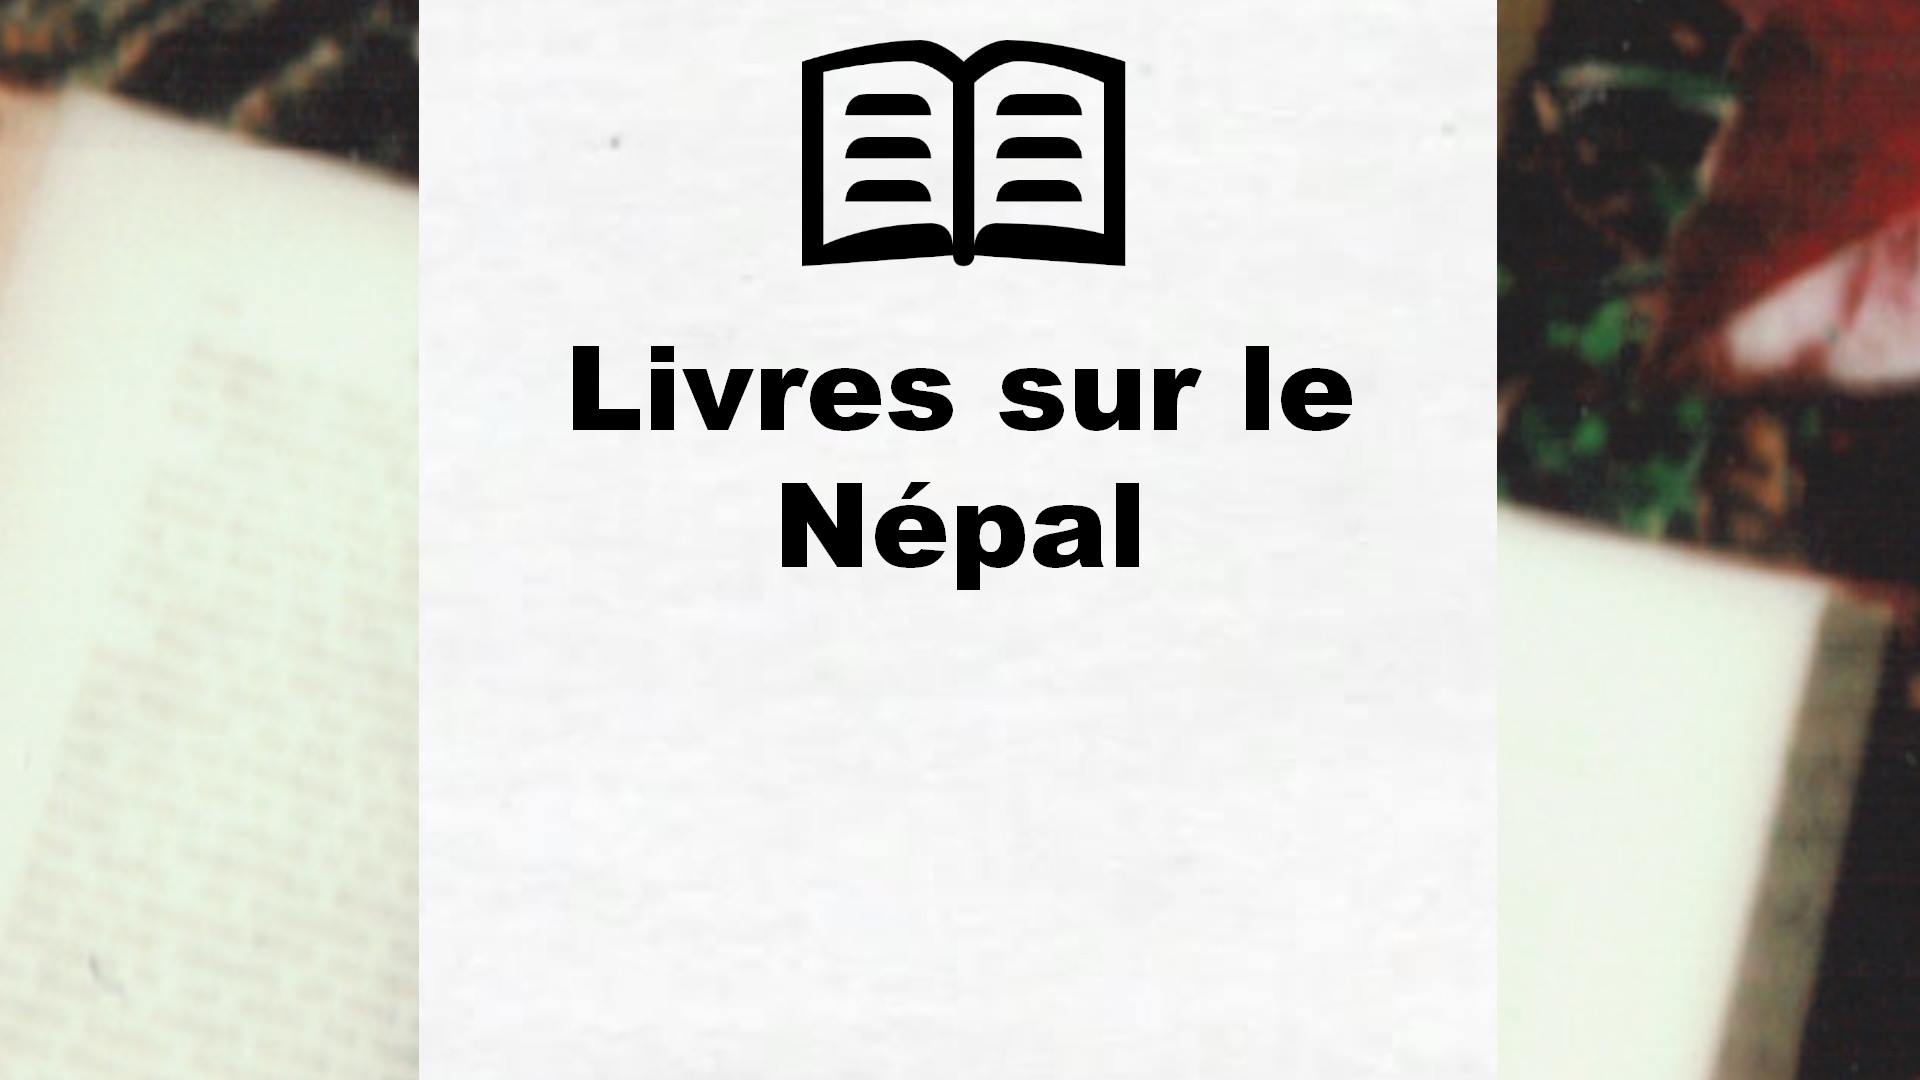 Livres sur le Népal